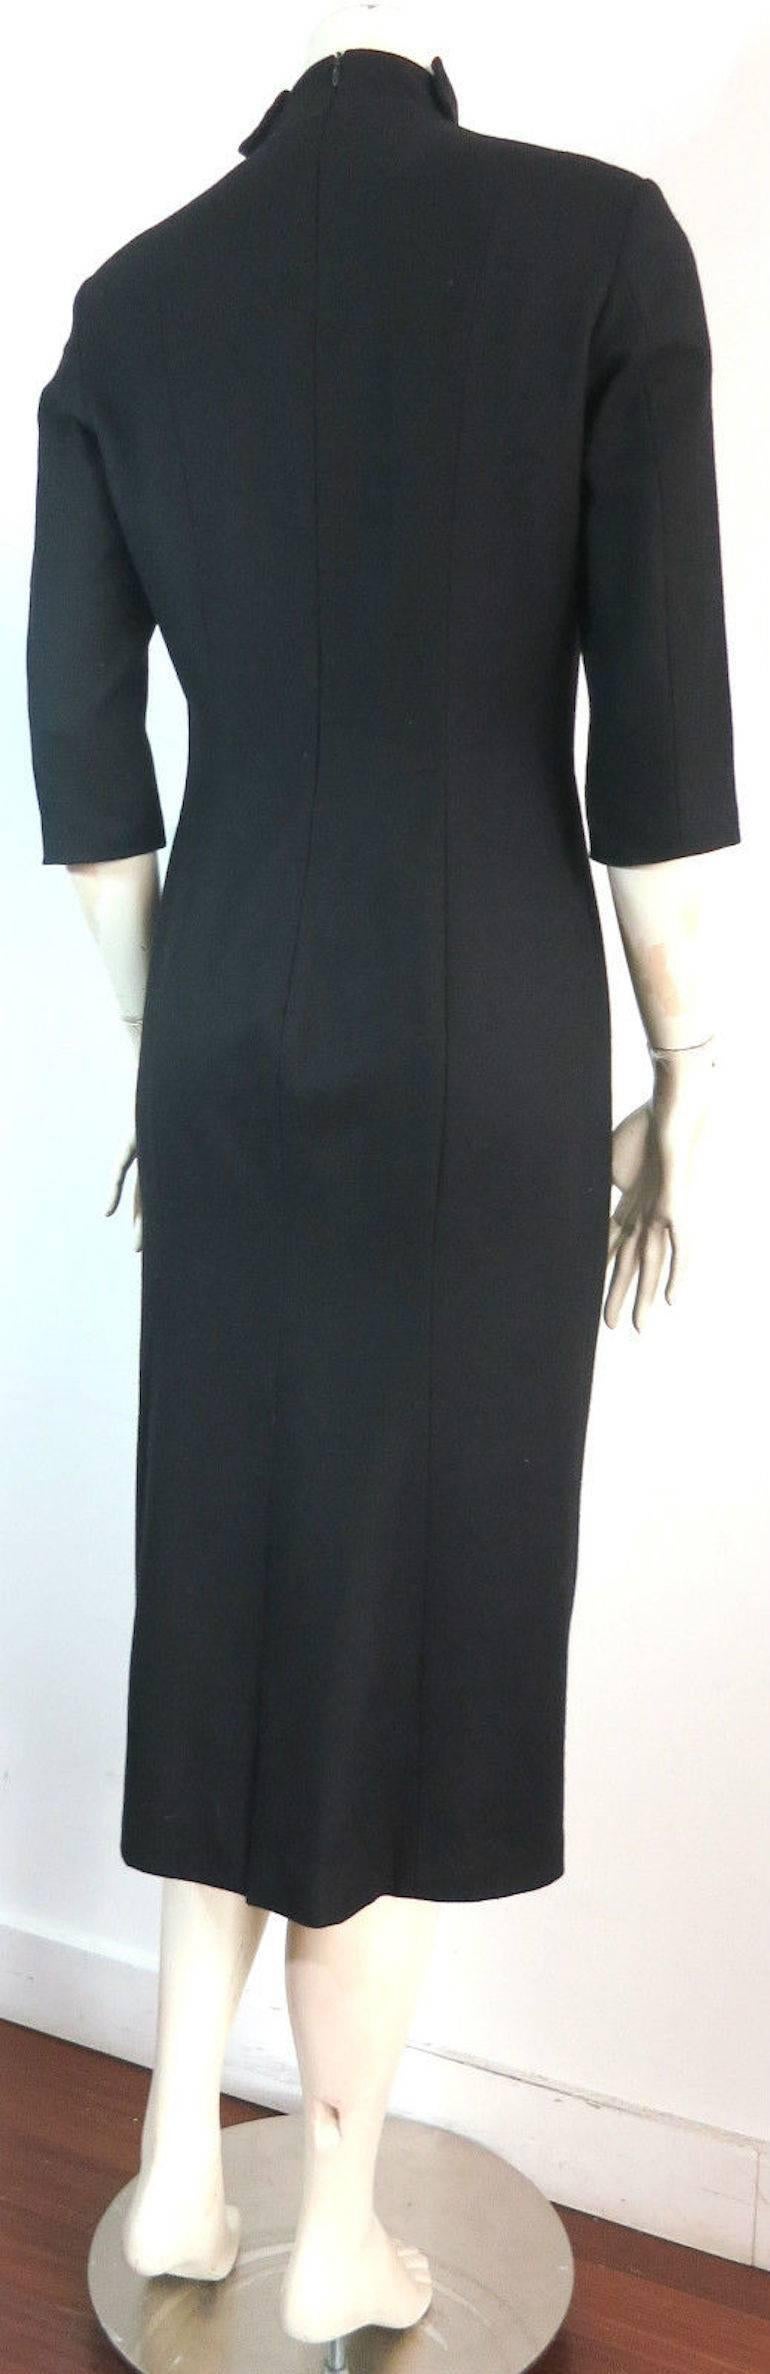 OLIVIER THEYSKENS Black wool dress For Sale 2